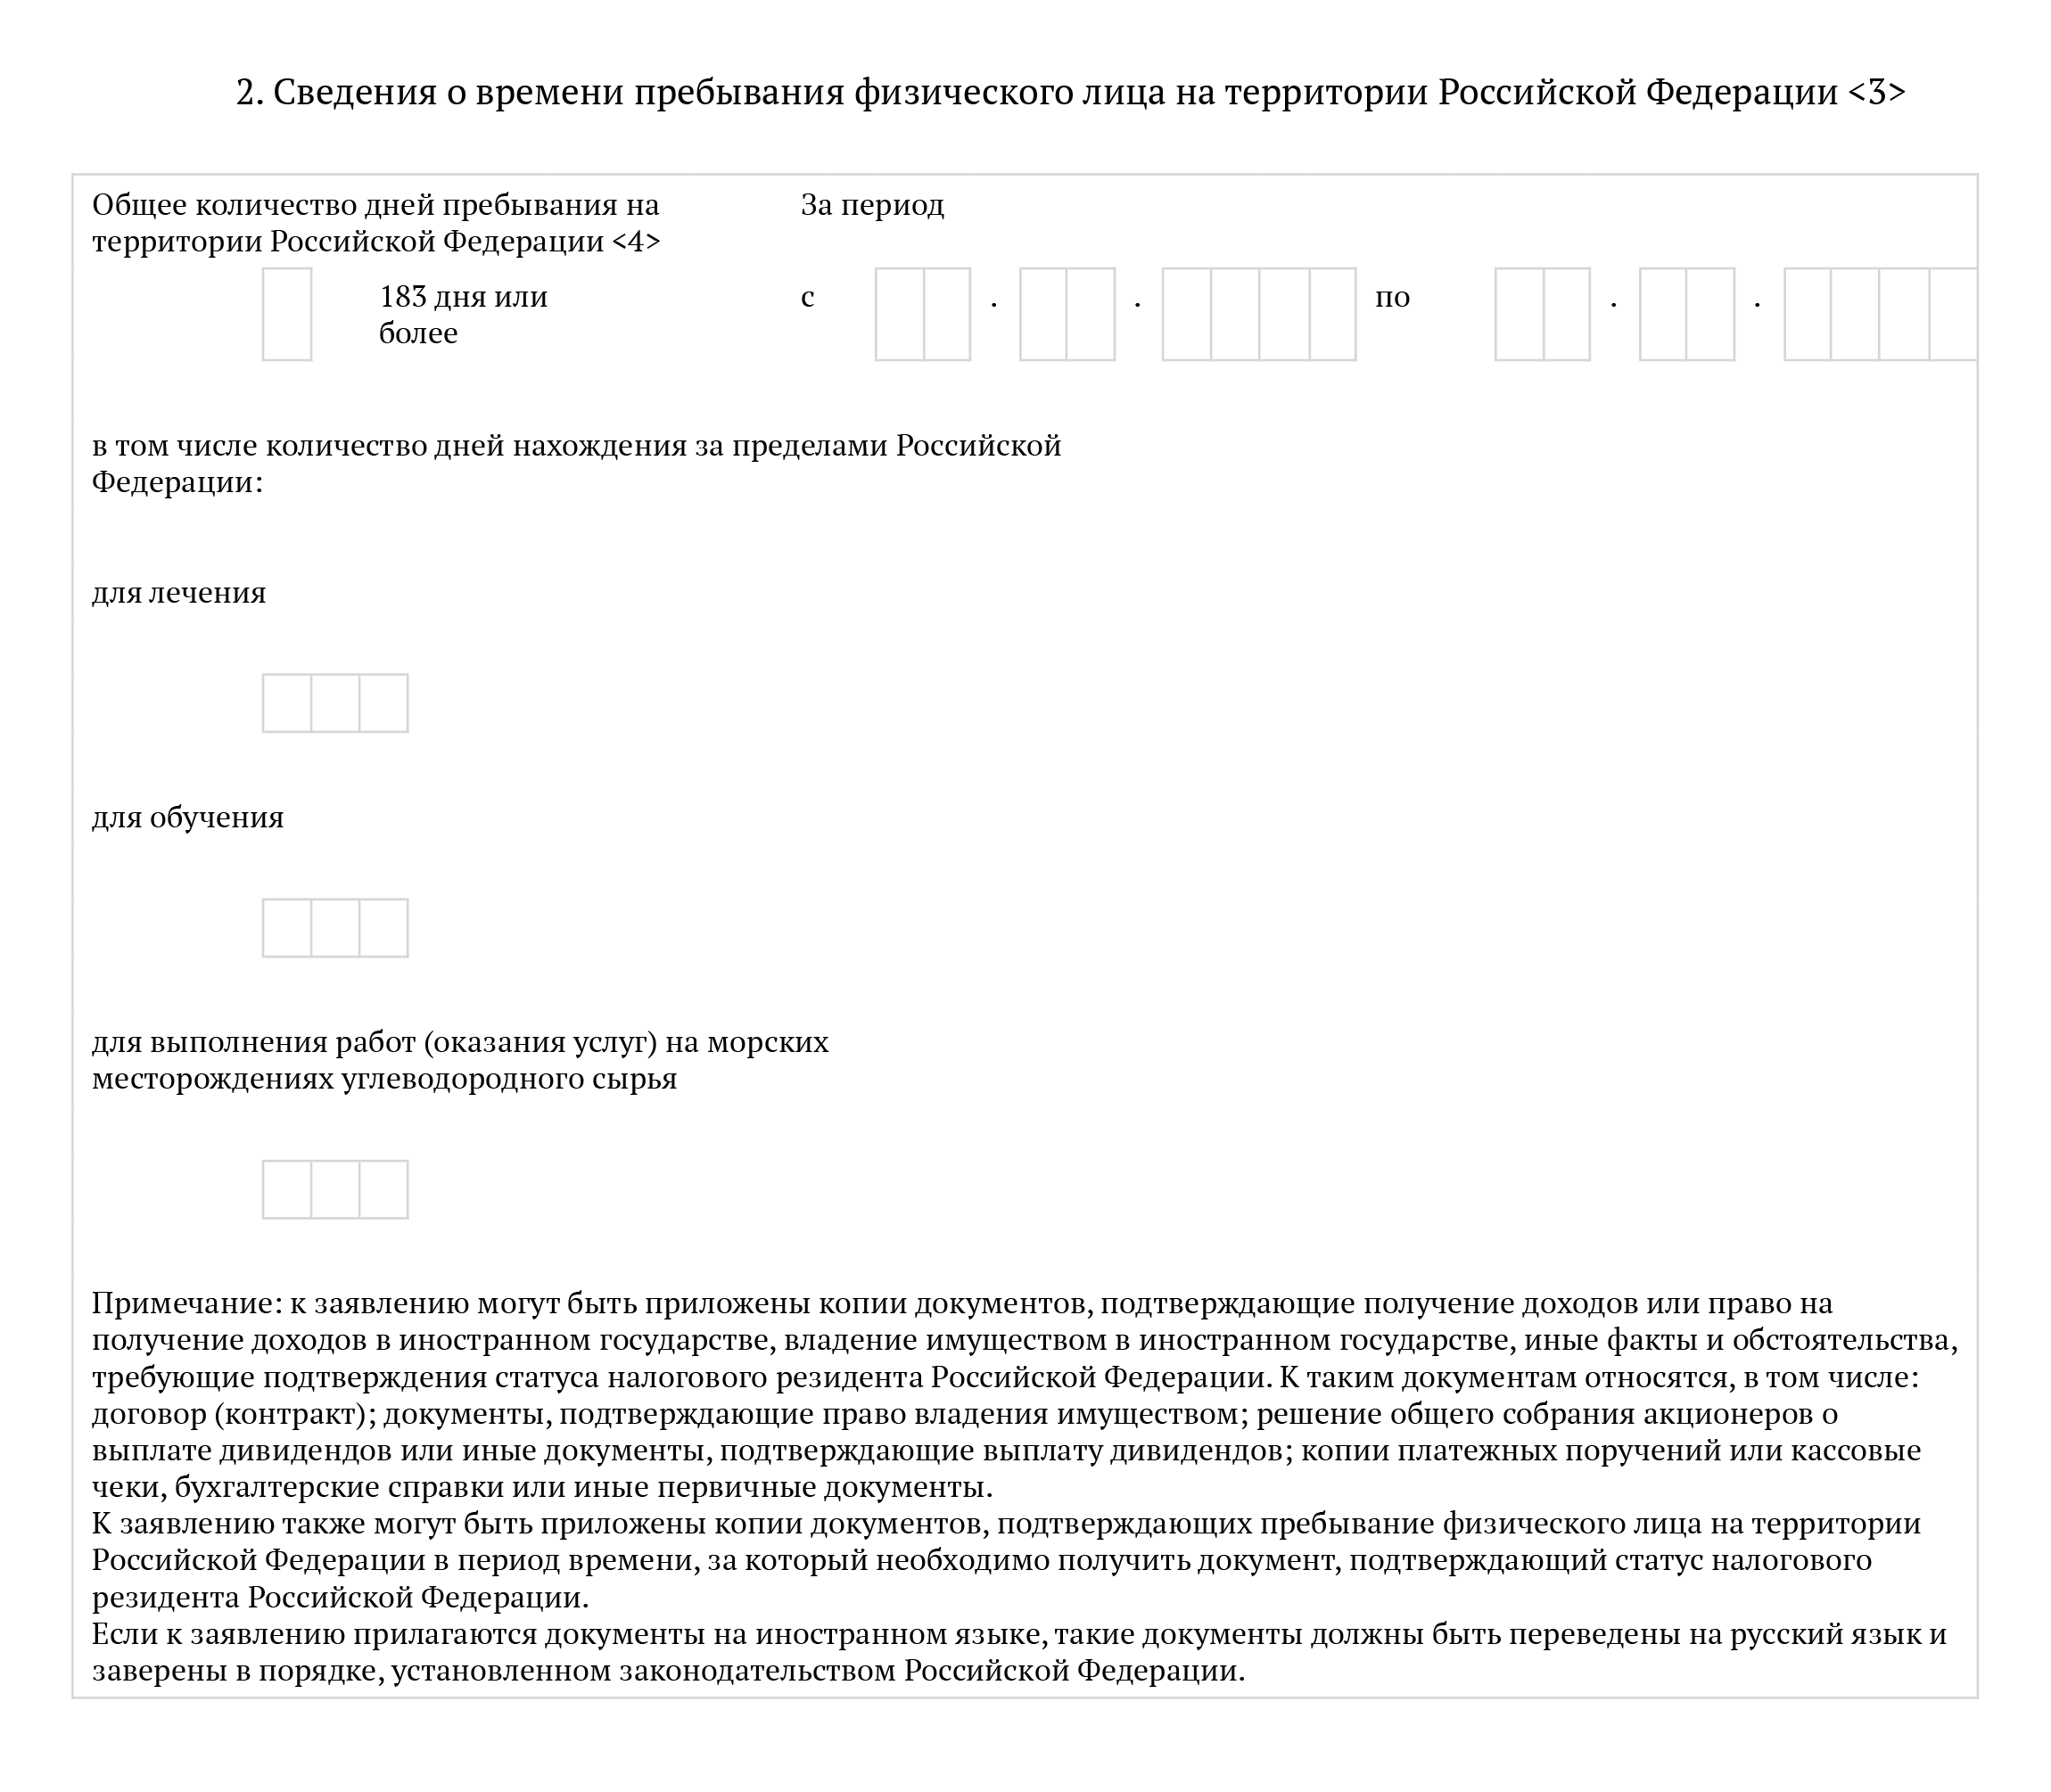 Фрагмент формы, которую заполняют, чтобы узнать налоговый статус. Источник: normativ.kontur.ru